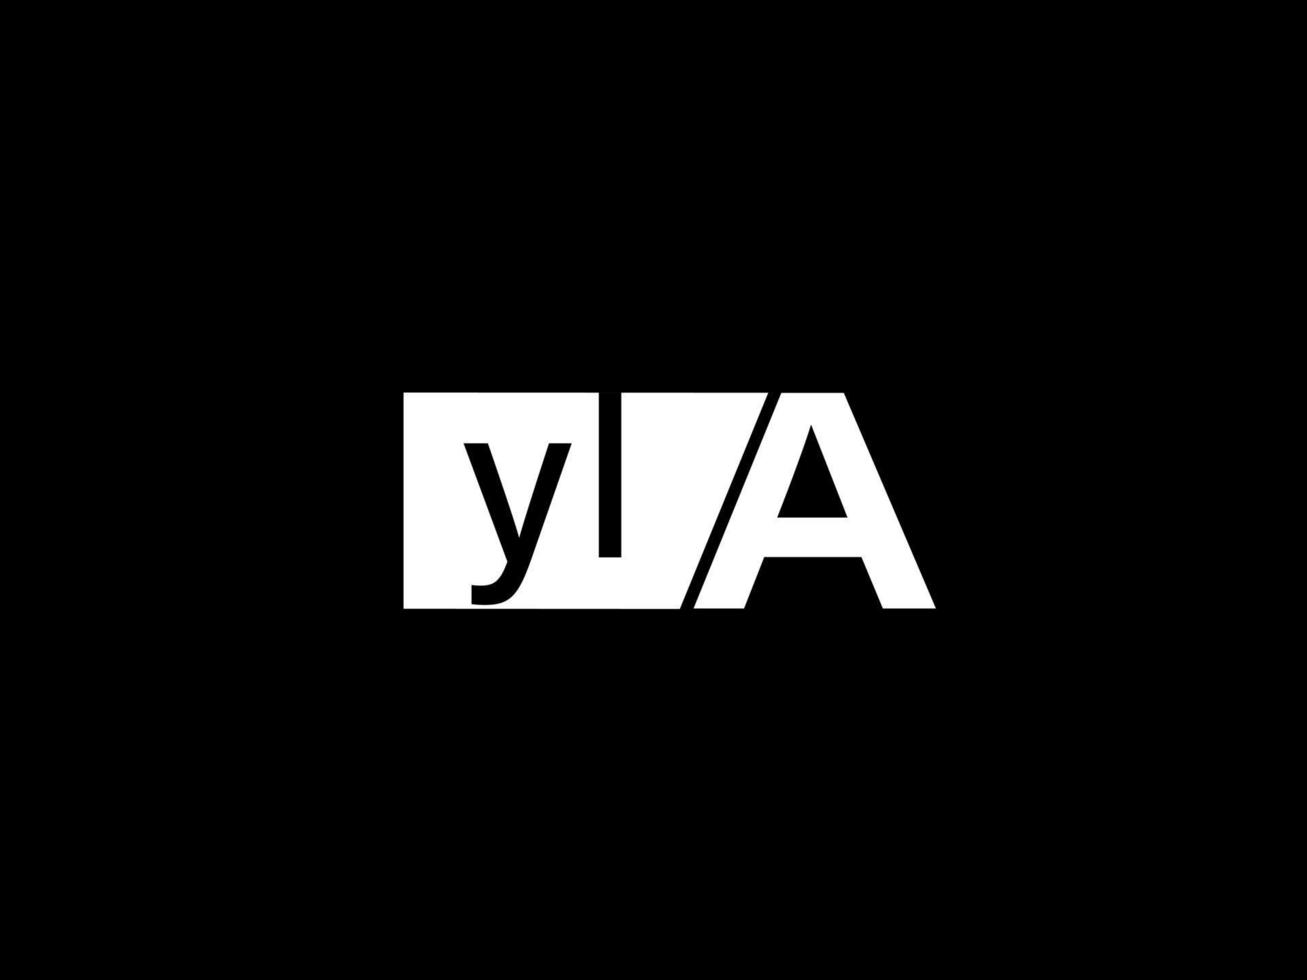 logotipo yla e arte vetorial de design gráfico, ícones isolados em fundo preto vetor